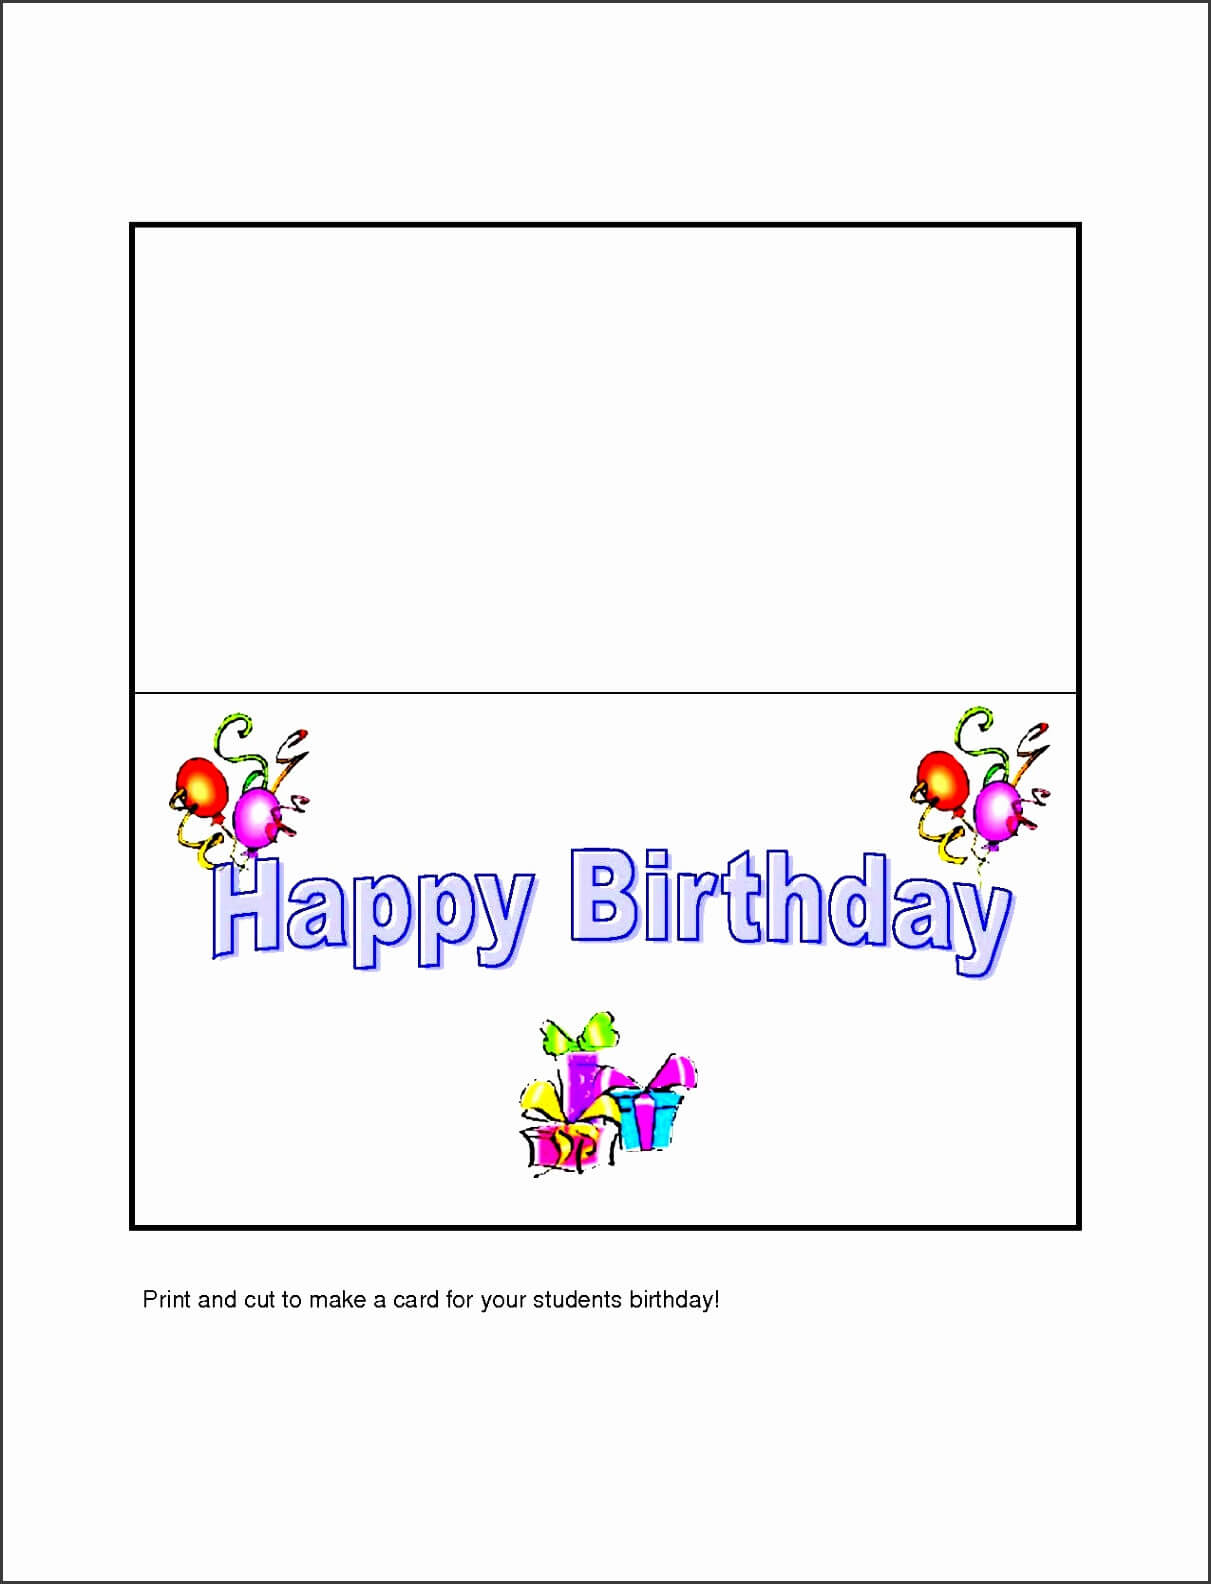 العلامة: Happy Birthday Card Template Microsoft Word أفضل الصور Regarding Microsoft Word Birthday Card Template